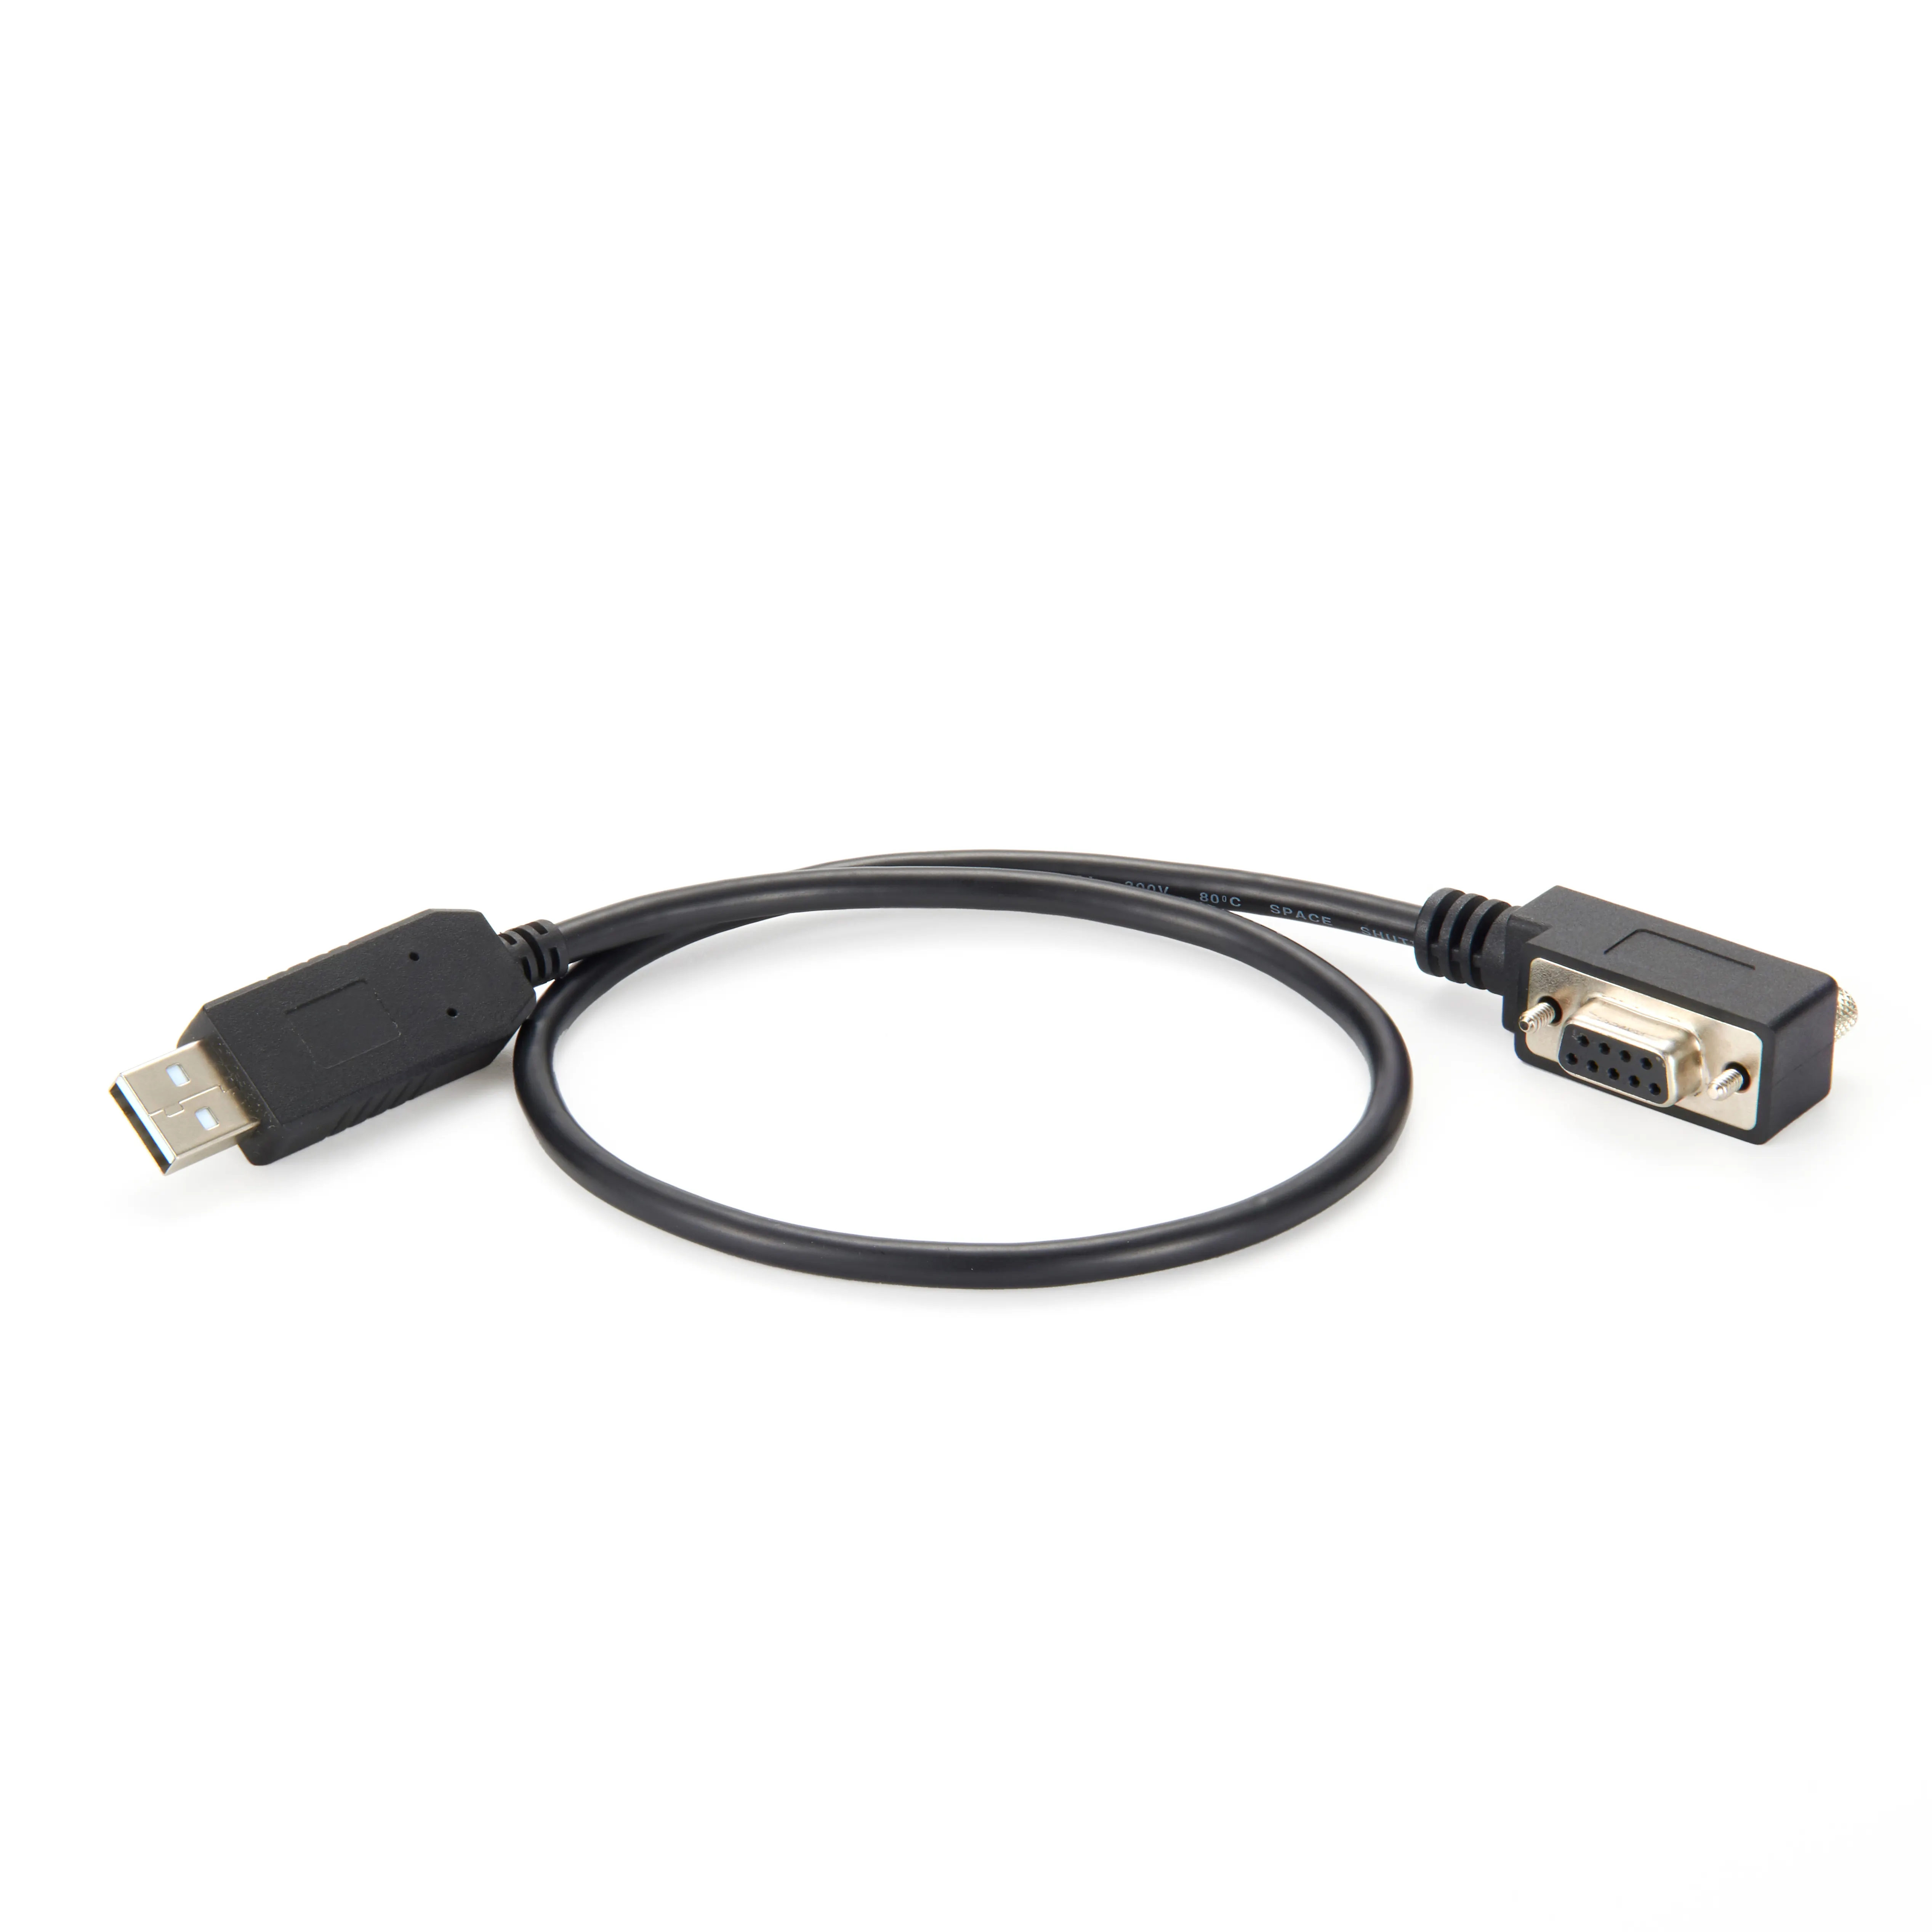 Bộ Chuyển Đổi USB Sang RS-422/485 Cấu Hình Thấp Db9/USB Sang RS232 DB9 90 Độ Cáp Bộ Chuyển Đổi Nối Tiếp